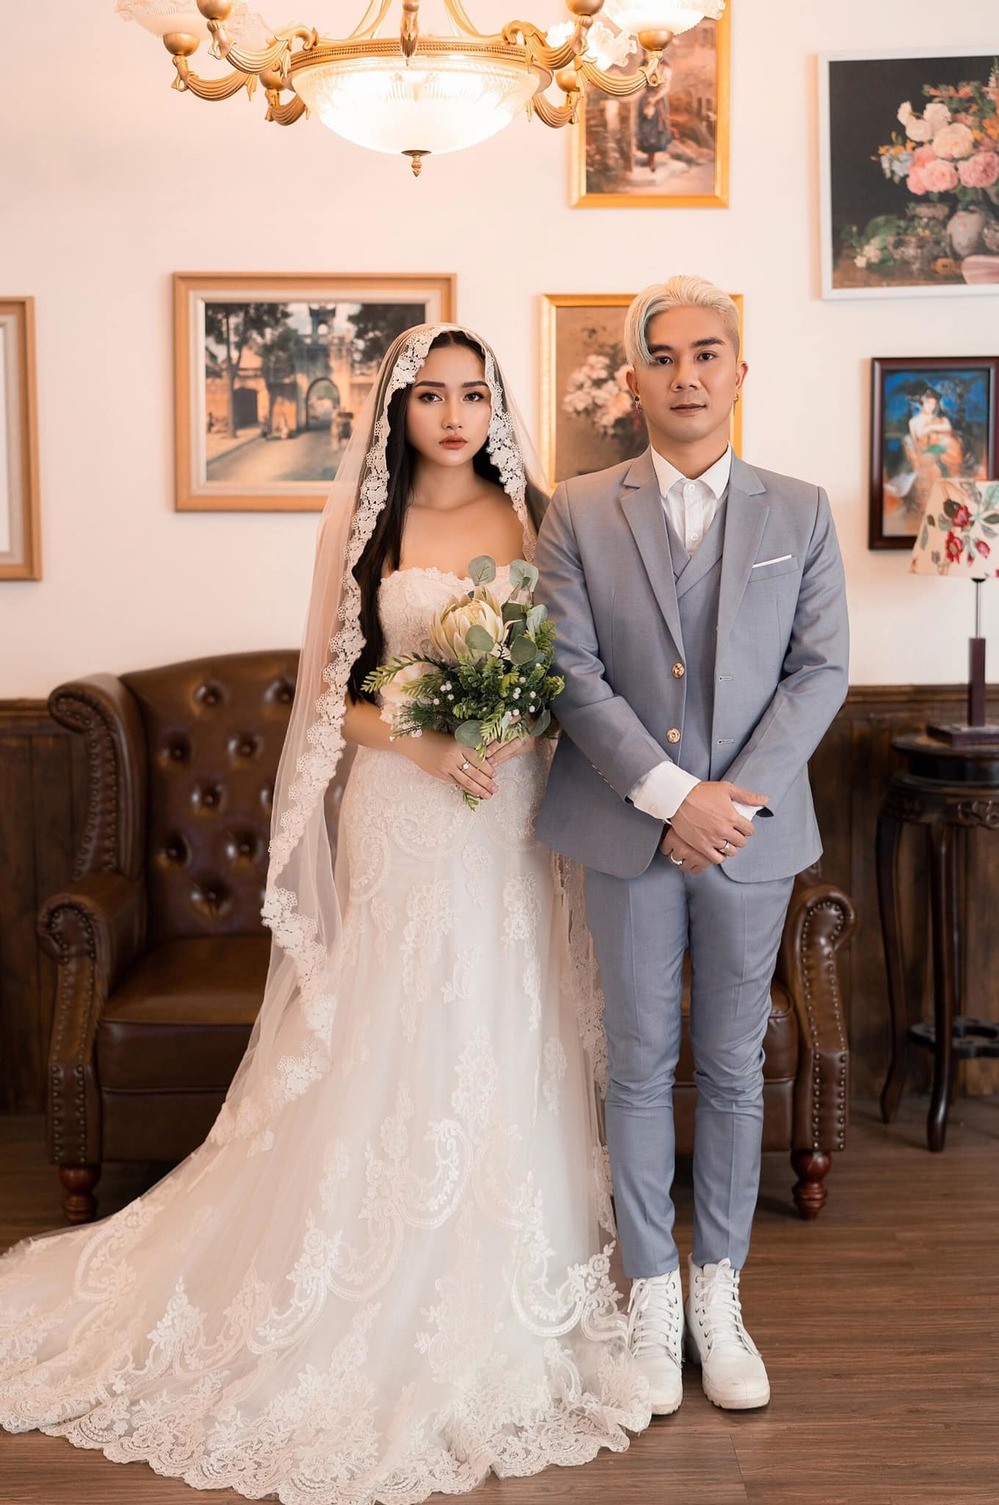  
Câu chuyện gia đình của Khánh Đơn và Huỳnh Như khiến người xem cảm động và ngưỡng mộ. (Ảnh: FBNV)